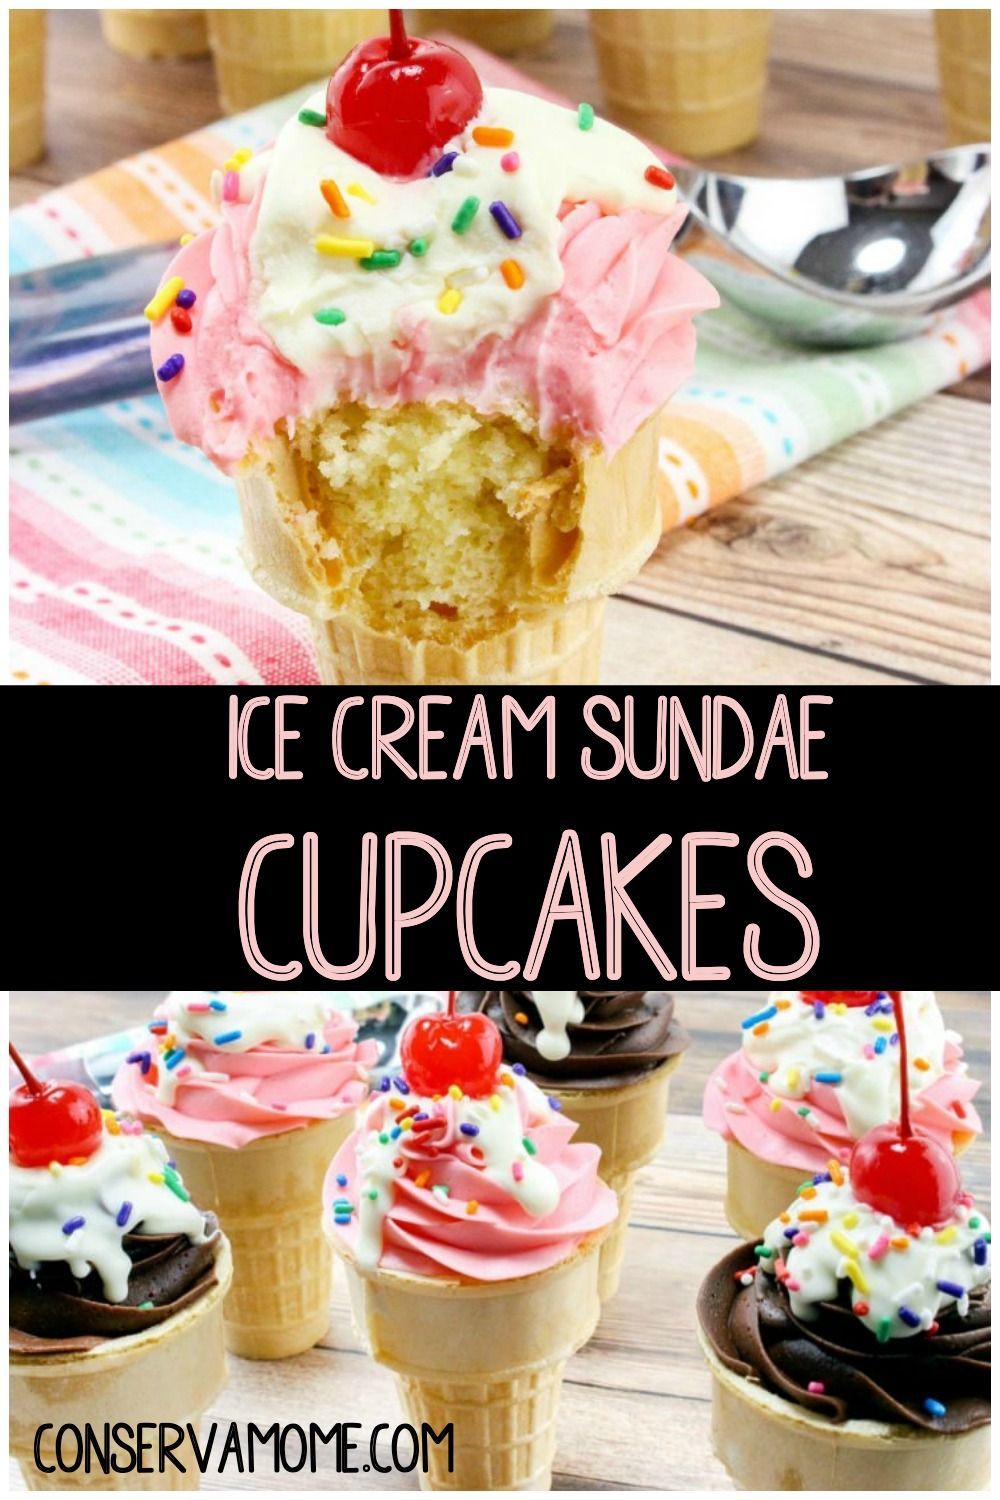 Ice cream sundae Cupcakes -   19 desserts Creative awesome ideas